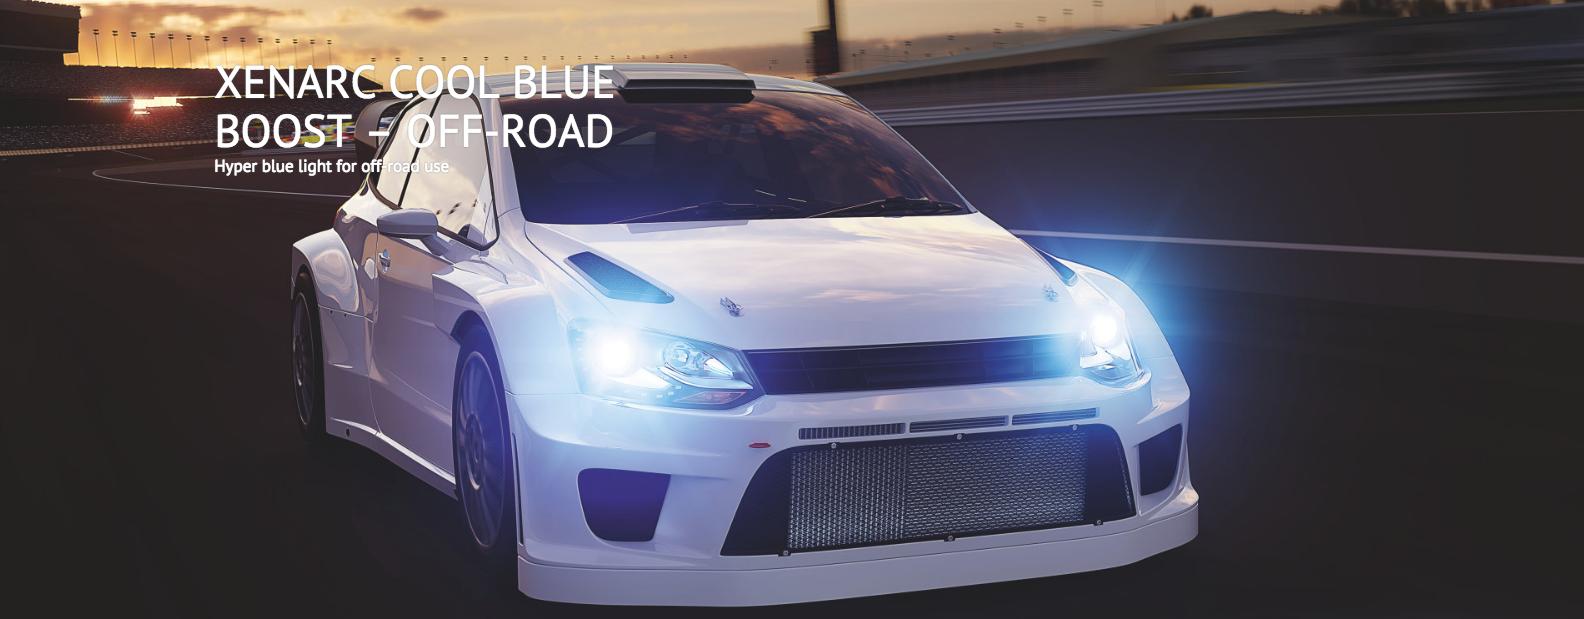 OSRAM Xenarc Cool Blue Boost D1S Xenon Car Headlight Bulbs (Twin